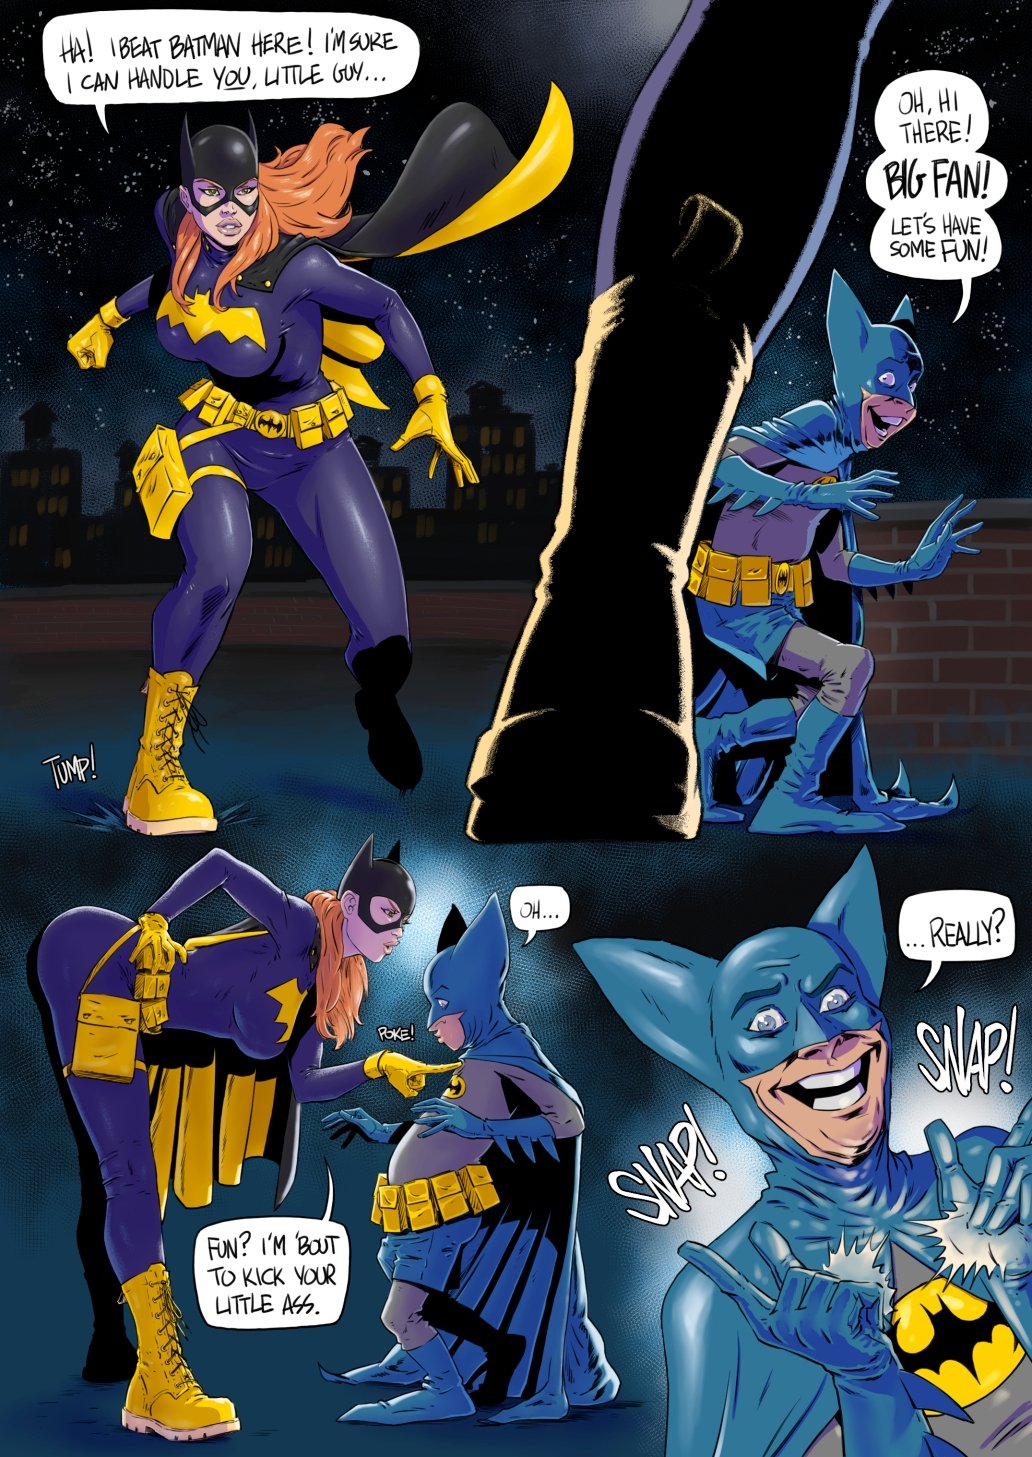 Batgirl xxx comics